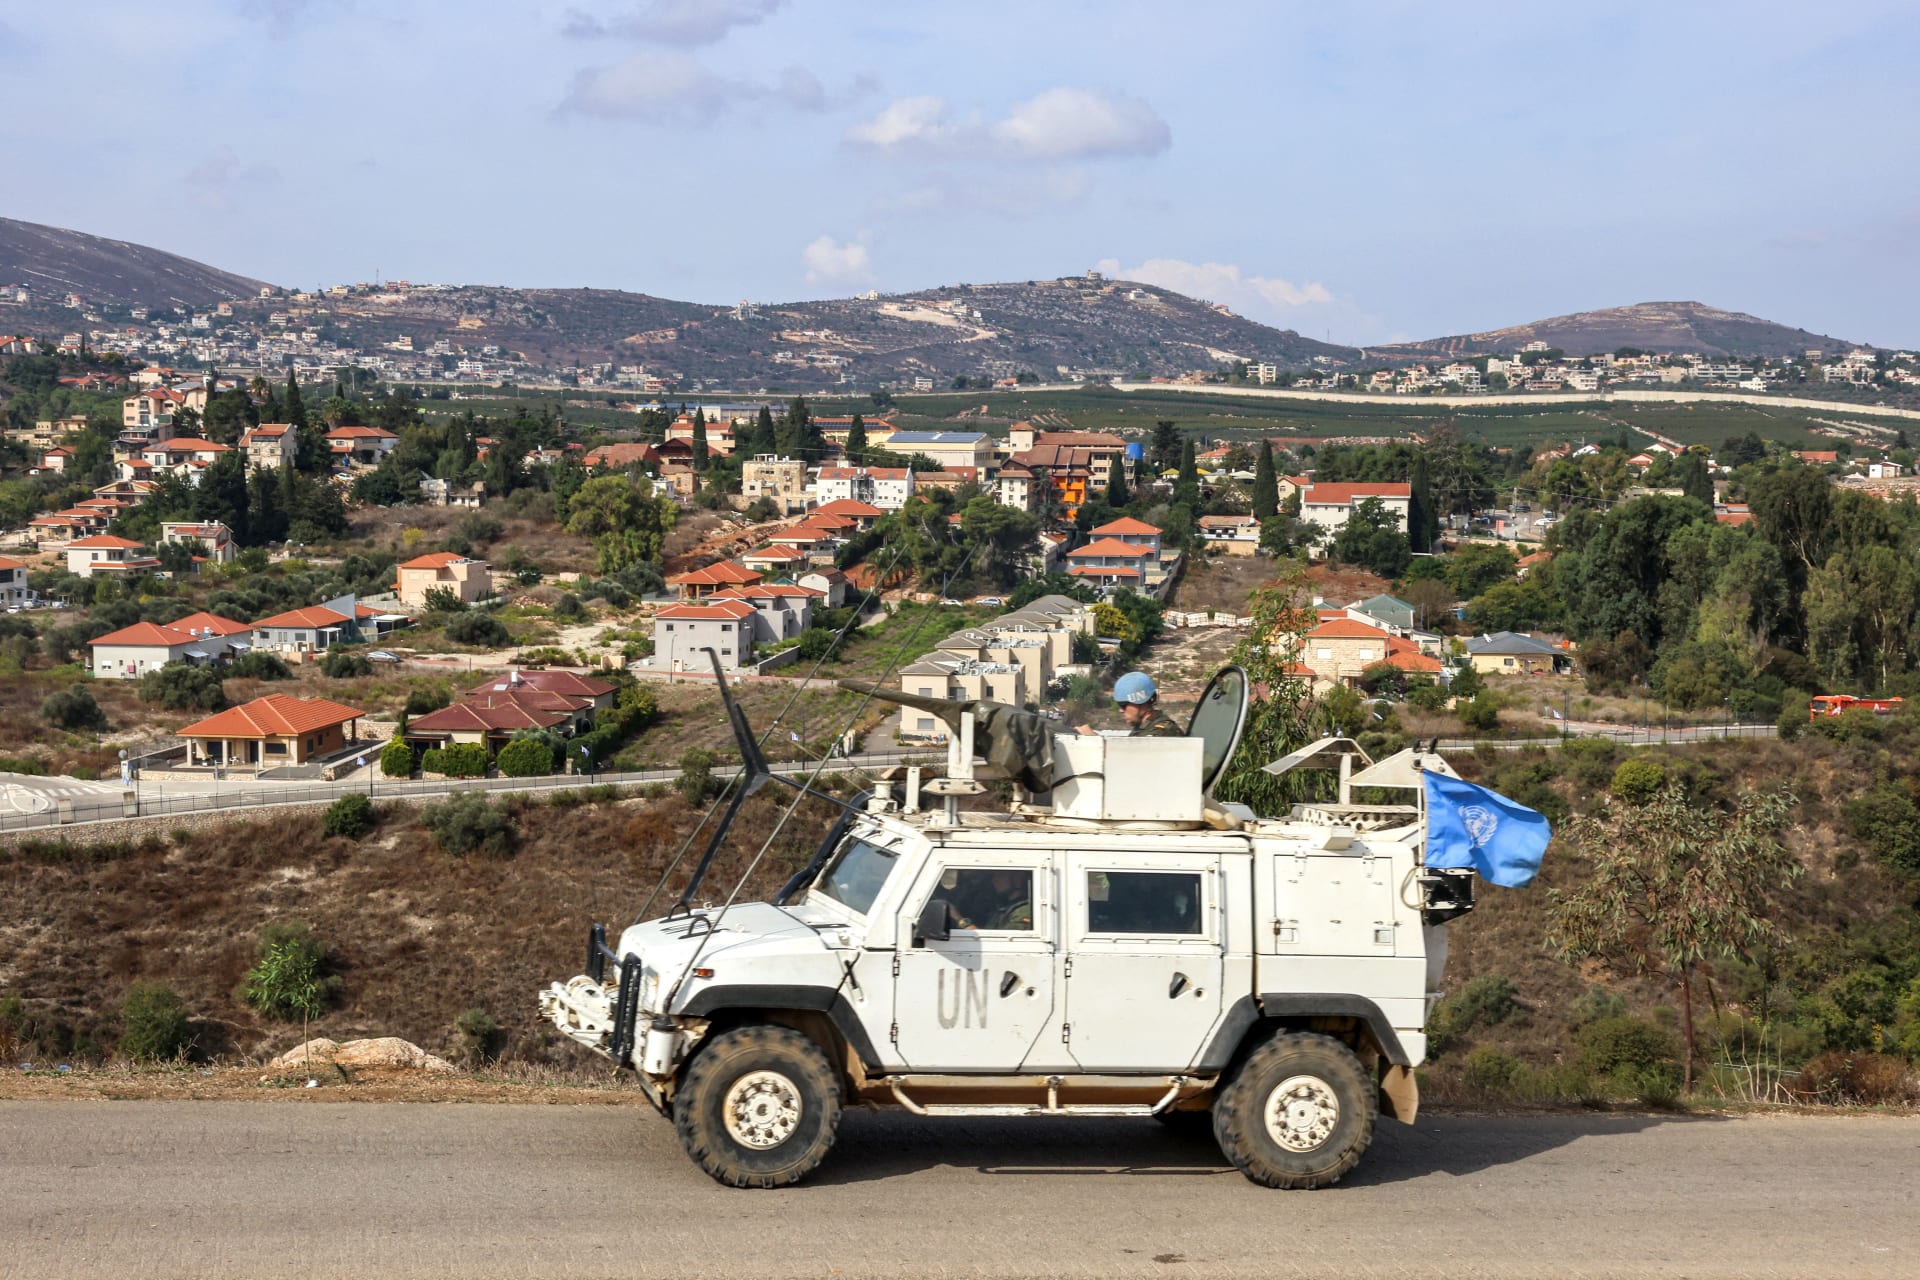 مركبة مدرعة تابعة لقوات الأمم المتحدة المؤقتة في لبنان (اليونيفيل) تتمركز بالقرب من نقطة حدودية في سهل الخيام اللبناني، مقابل بلدة المطلة شمال إسرائيل (الخلفية) في 11 أكتوبر/ تشرين الأول 2023.